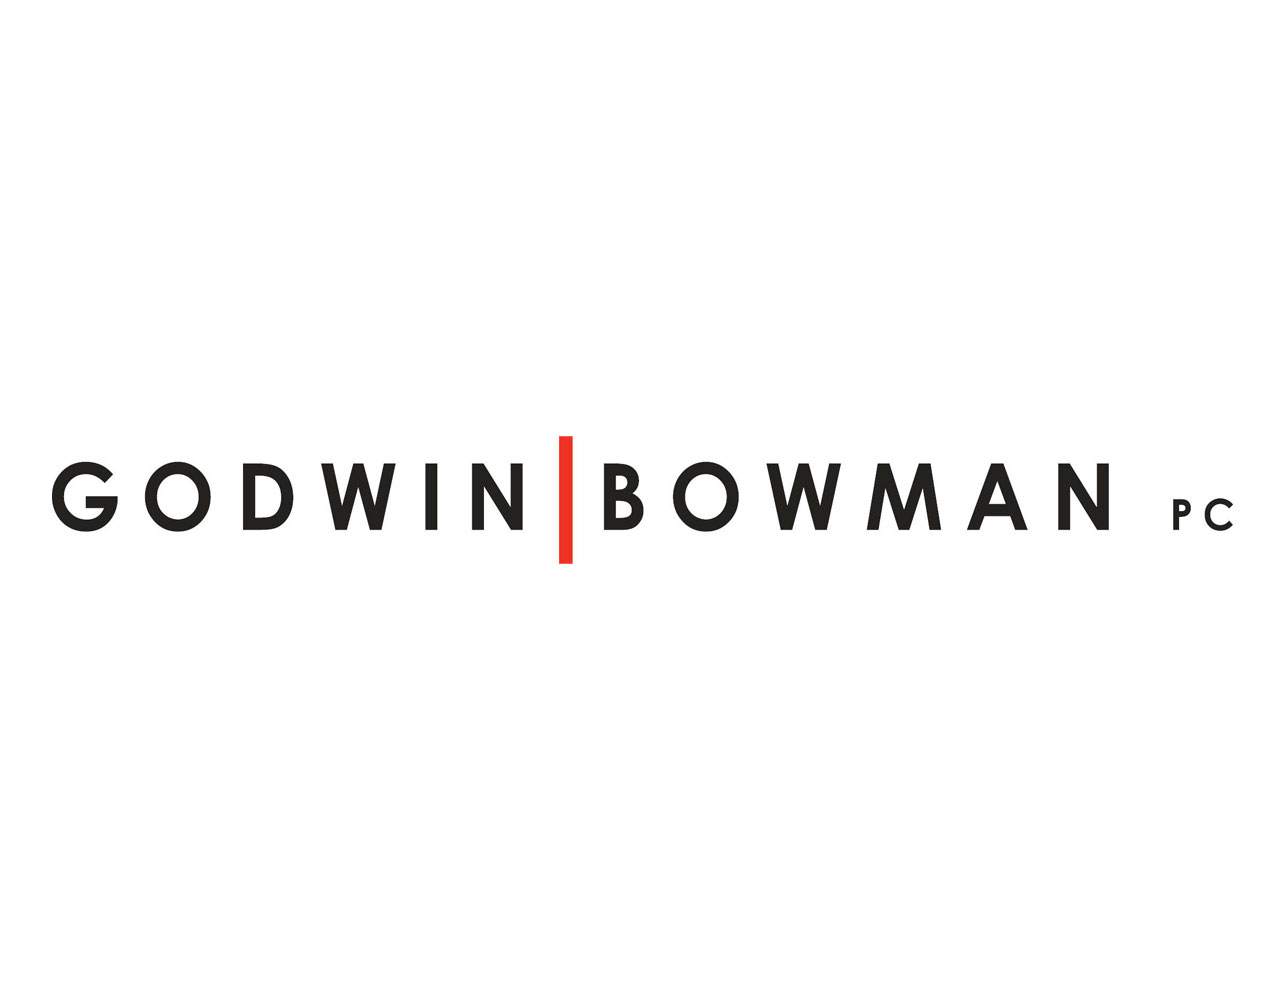 https://www.southlakechamber.org/wp-content/uploads/2023/03/GodwinBowman_Logo-1-1.jpg